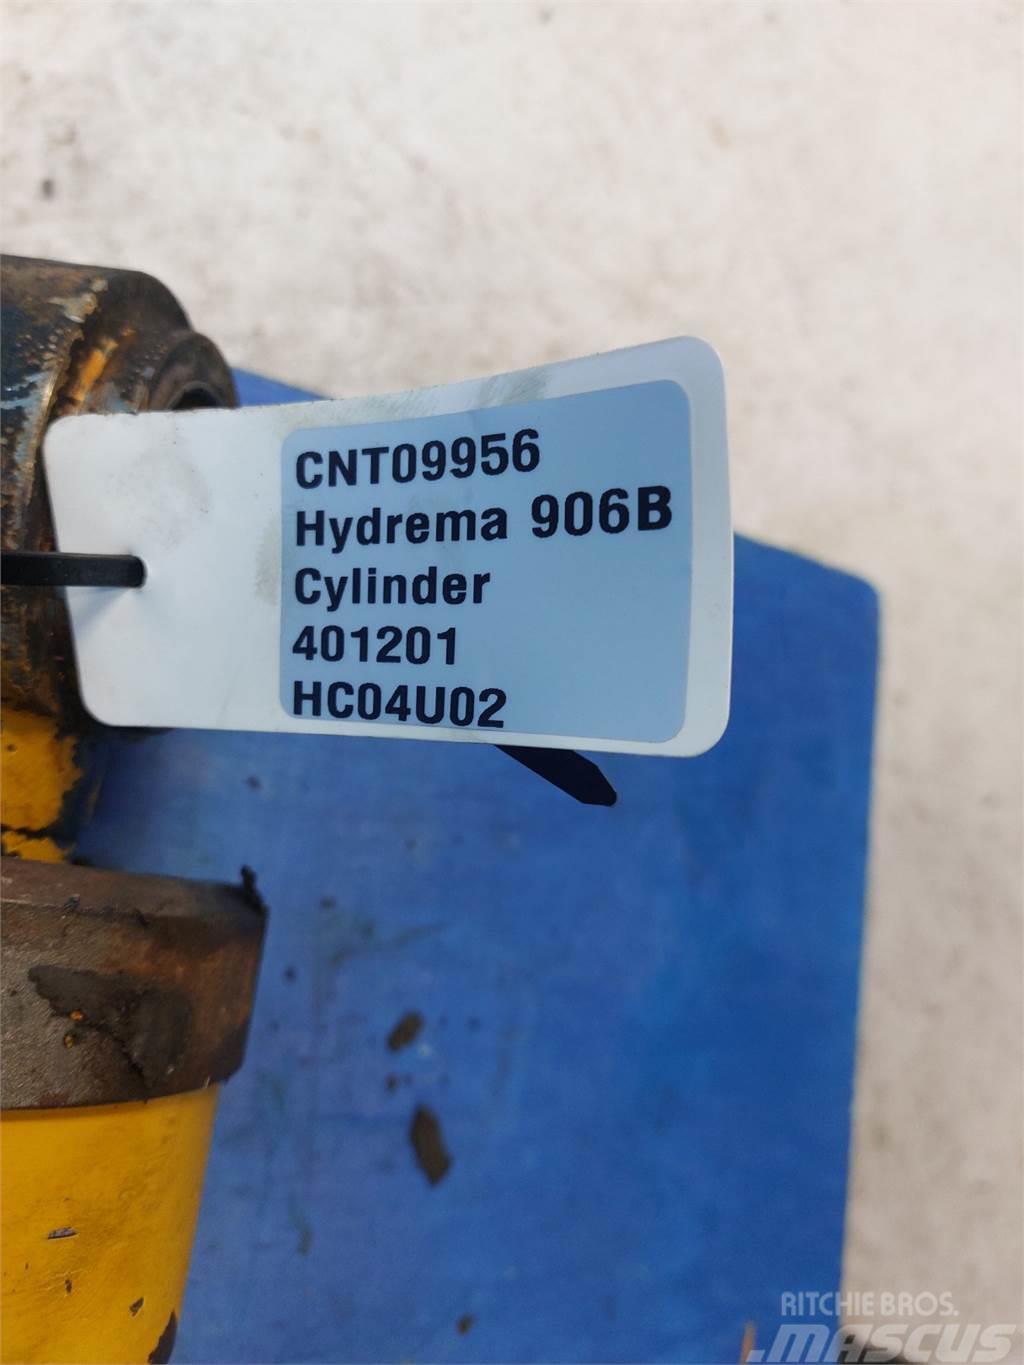 Hydrema 906B Boom in dipper roke